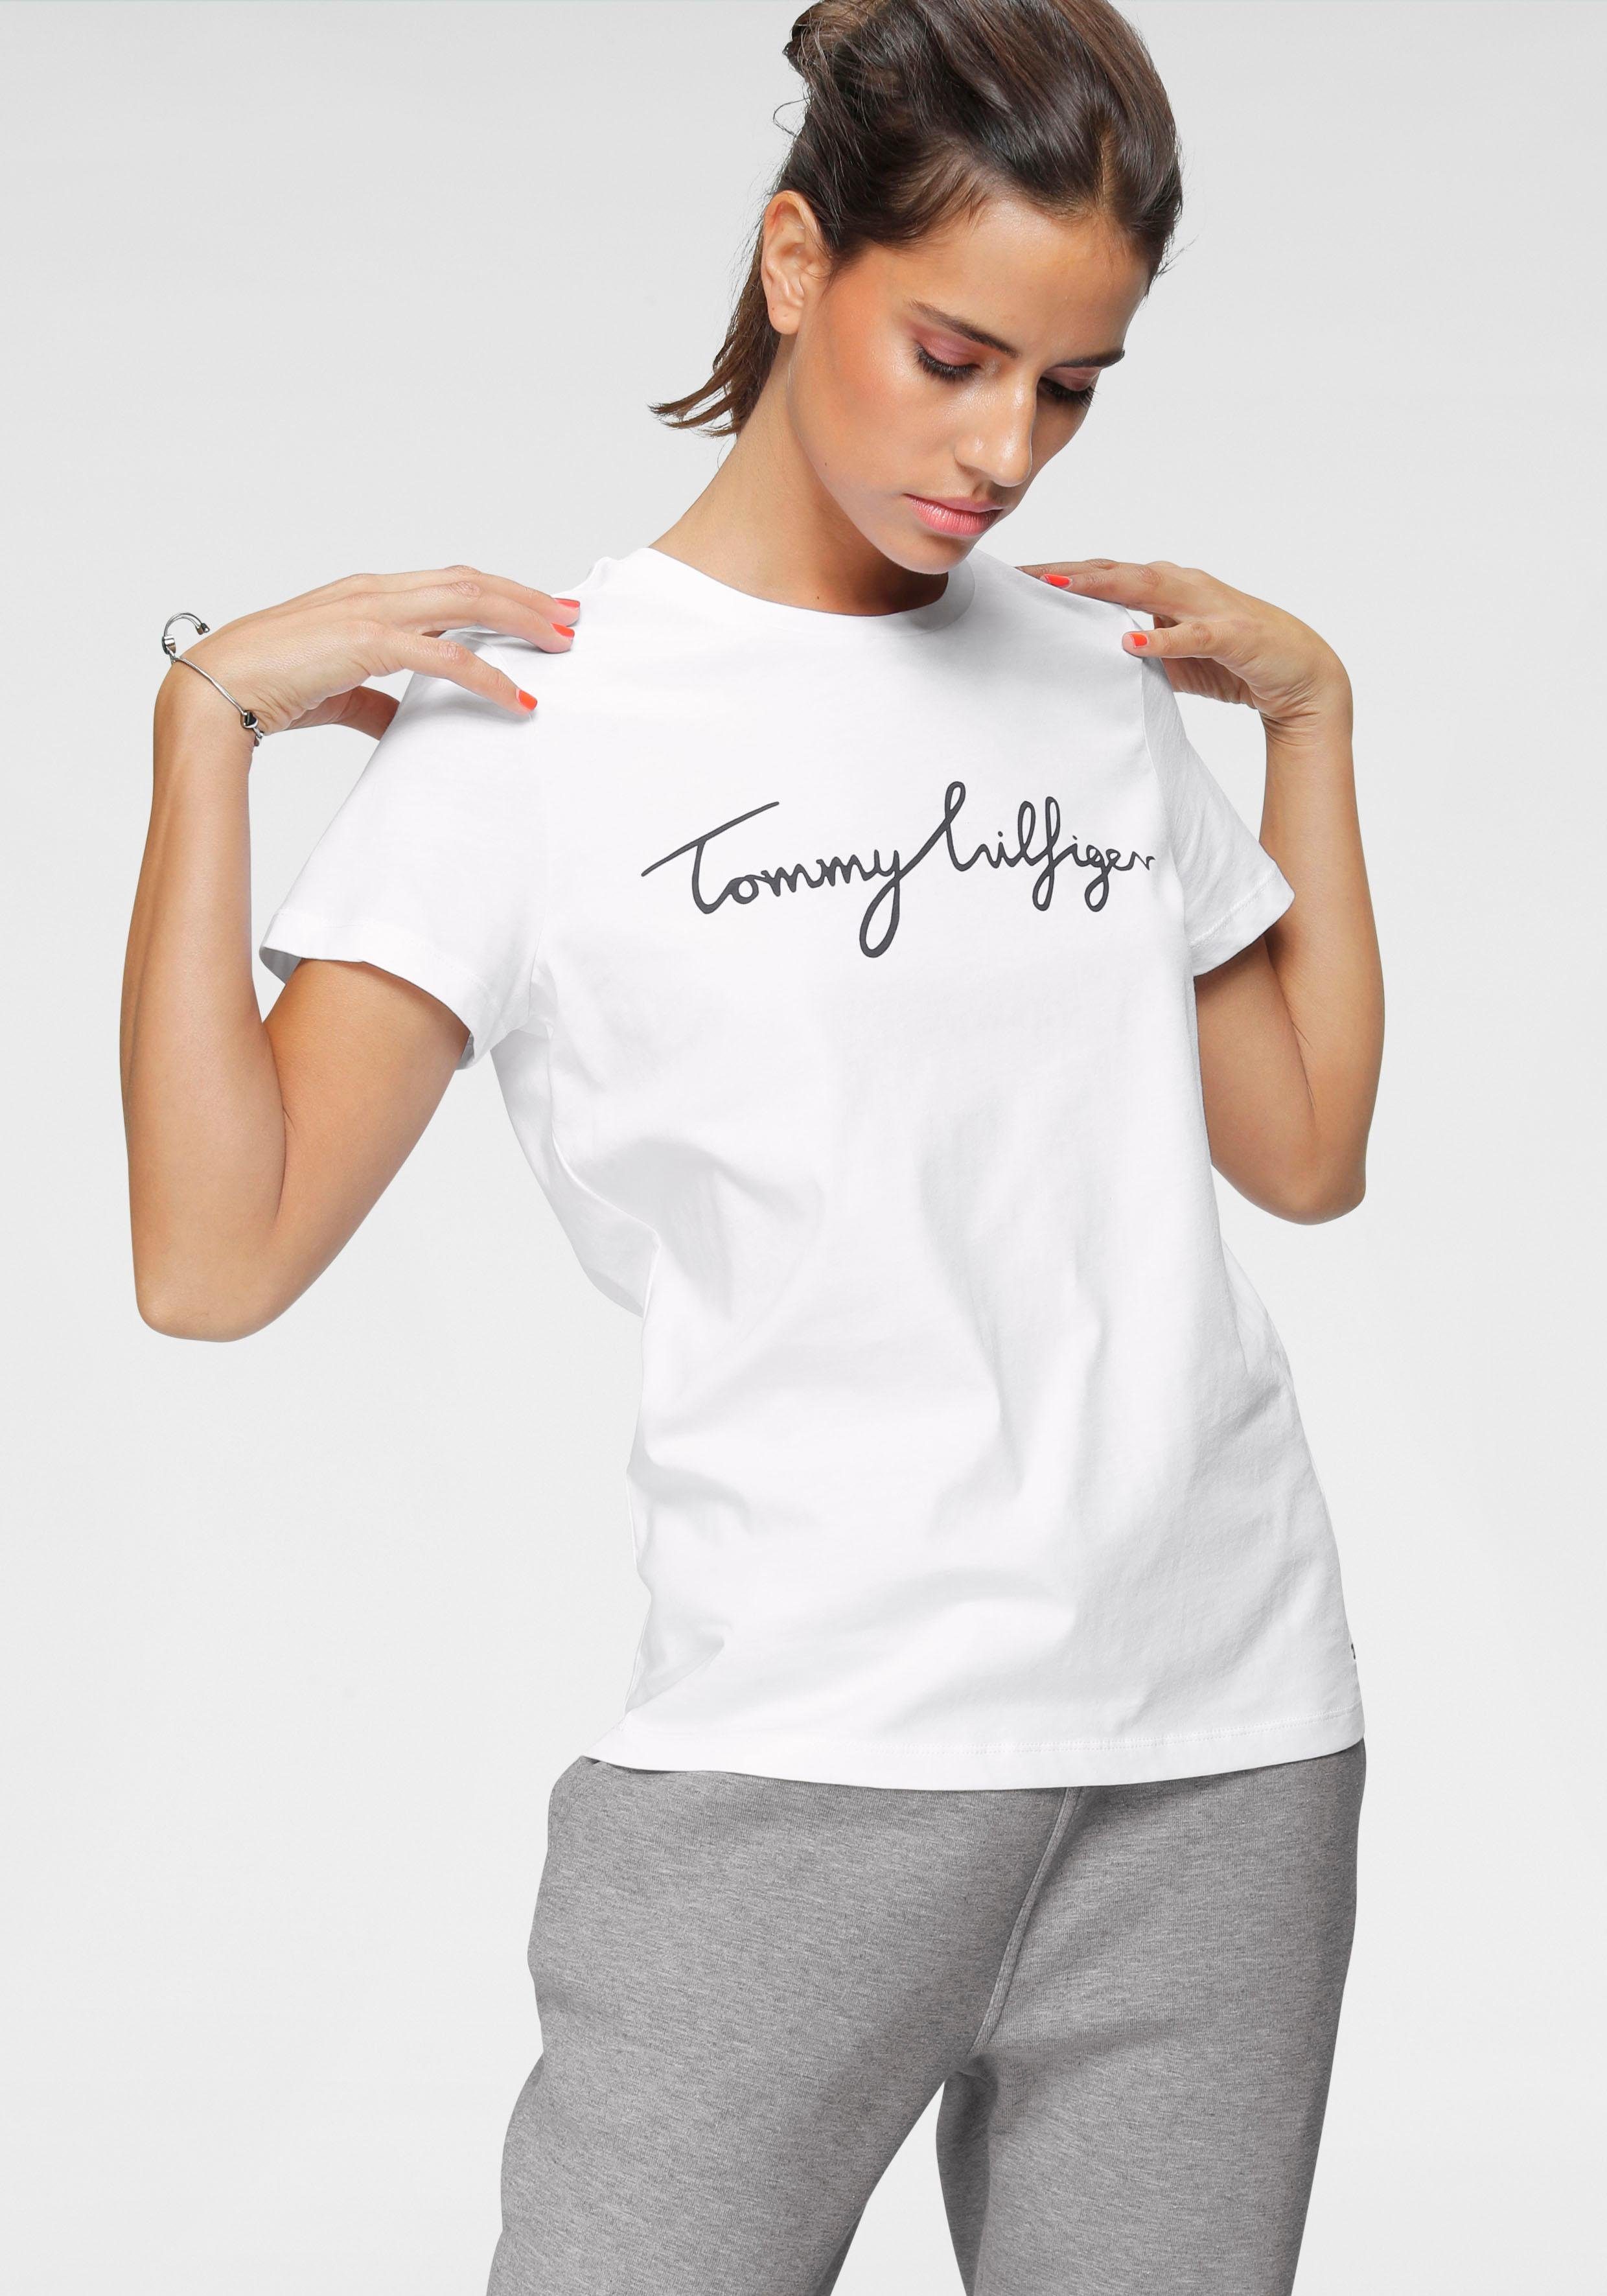 Tommy Hilfiger Damen T-Shirts online kaufen | OTTO